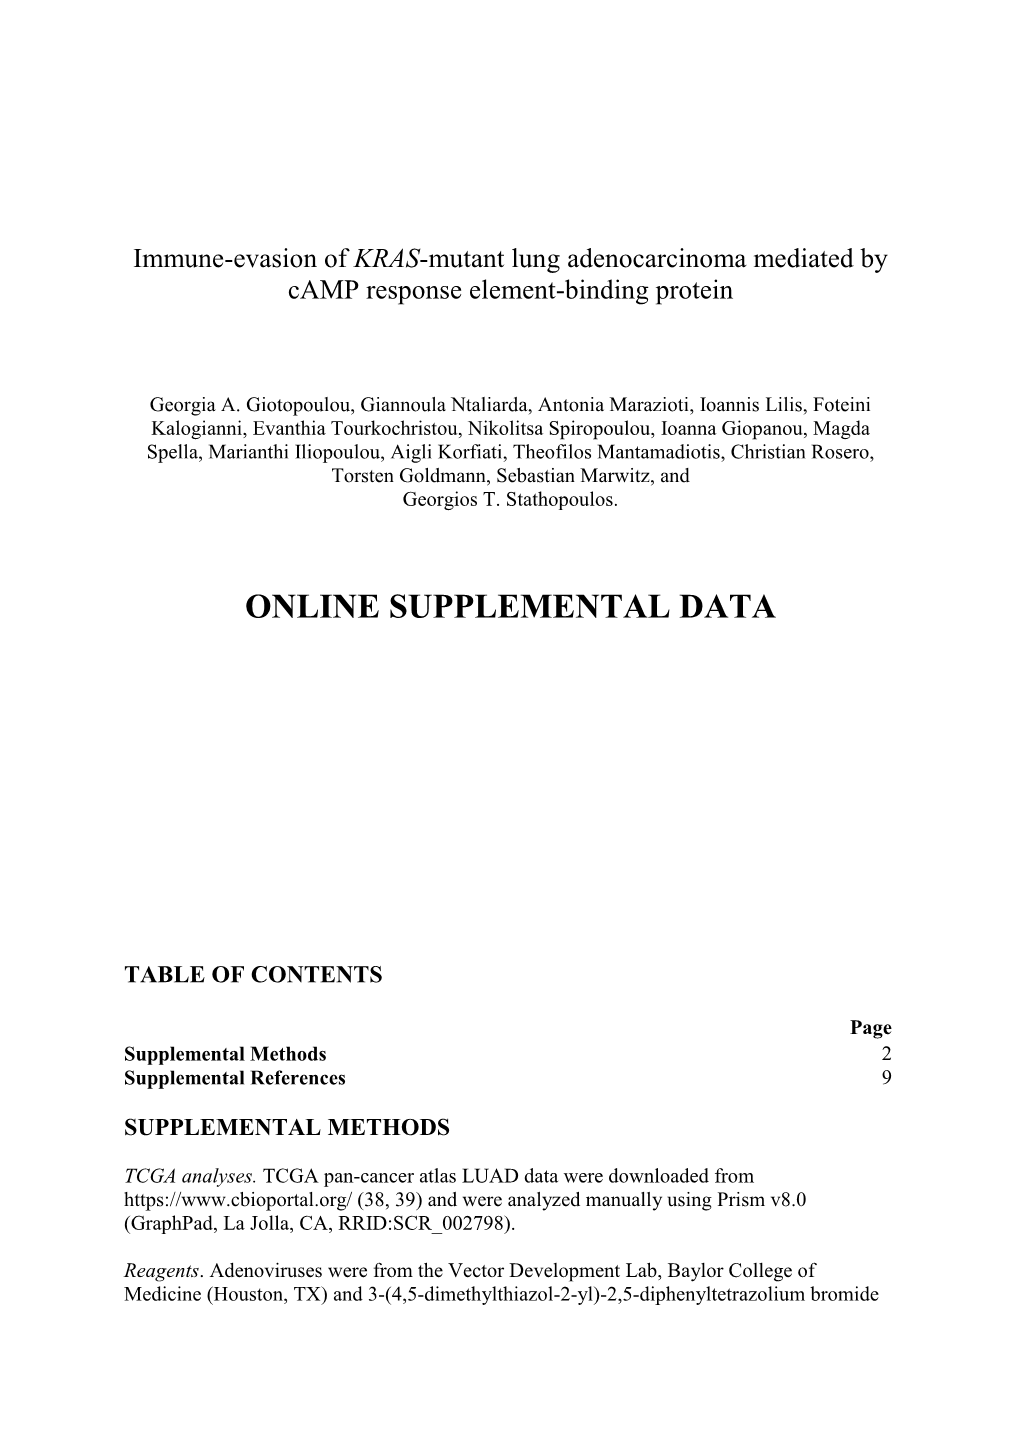 Online Supplemental Data